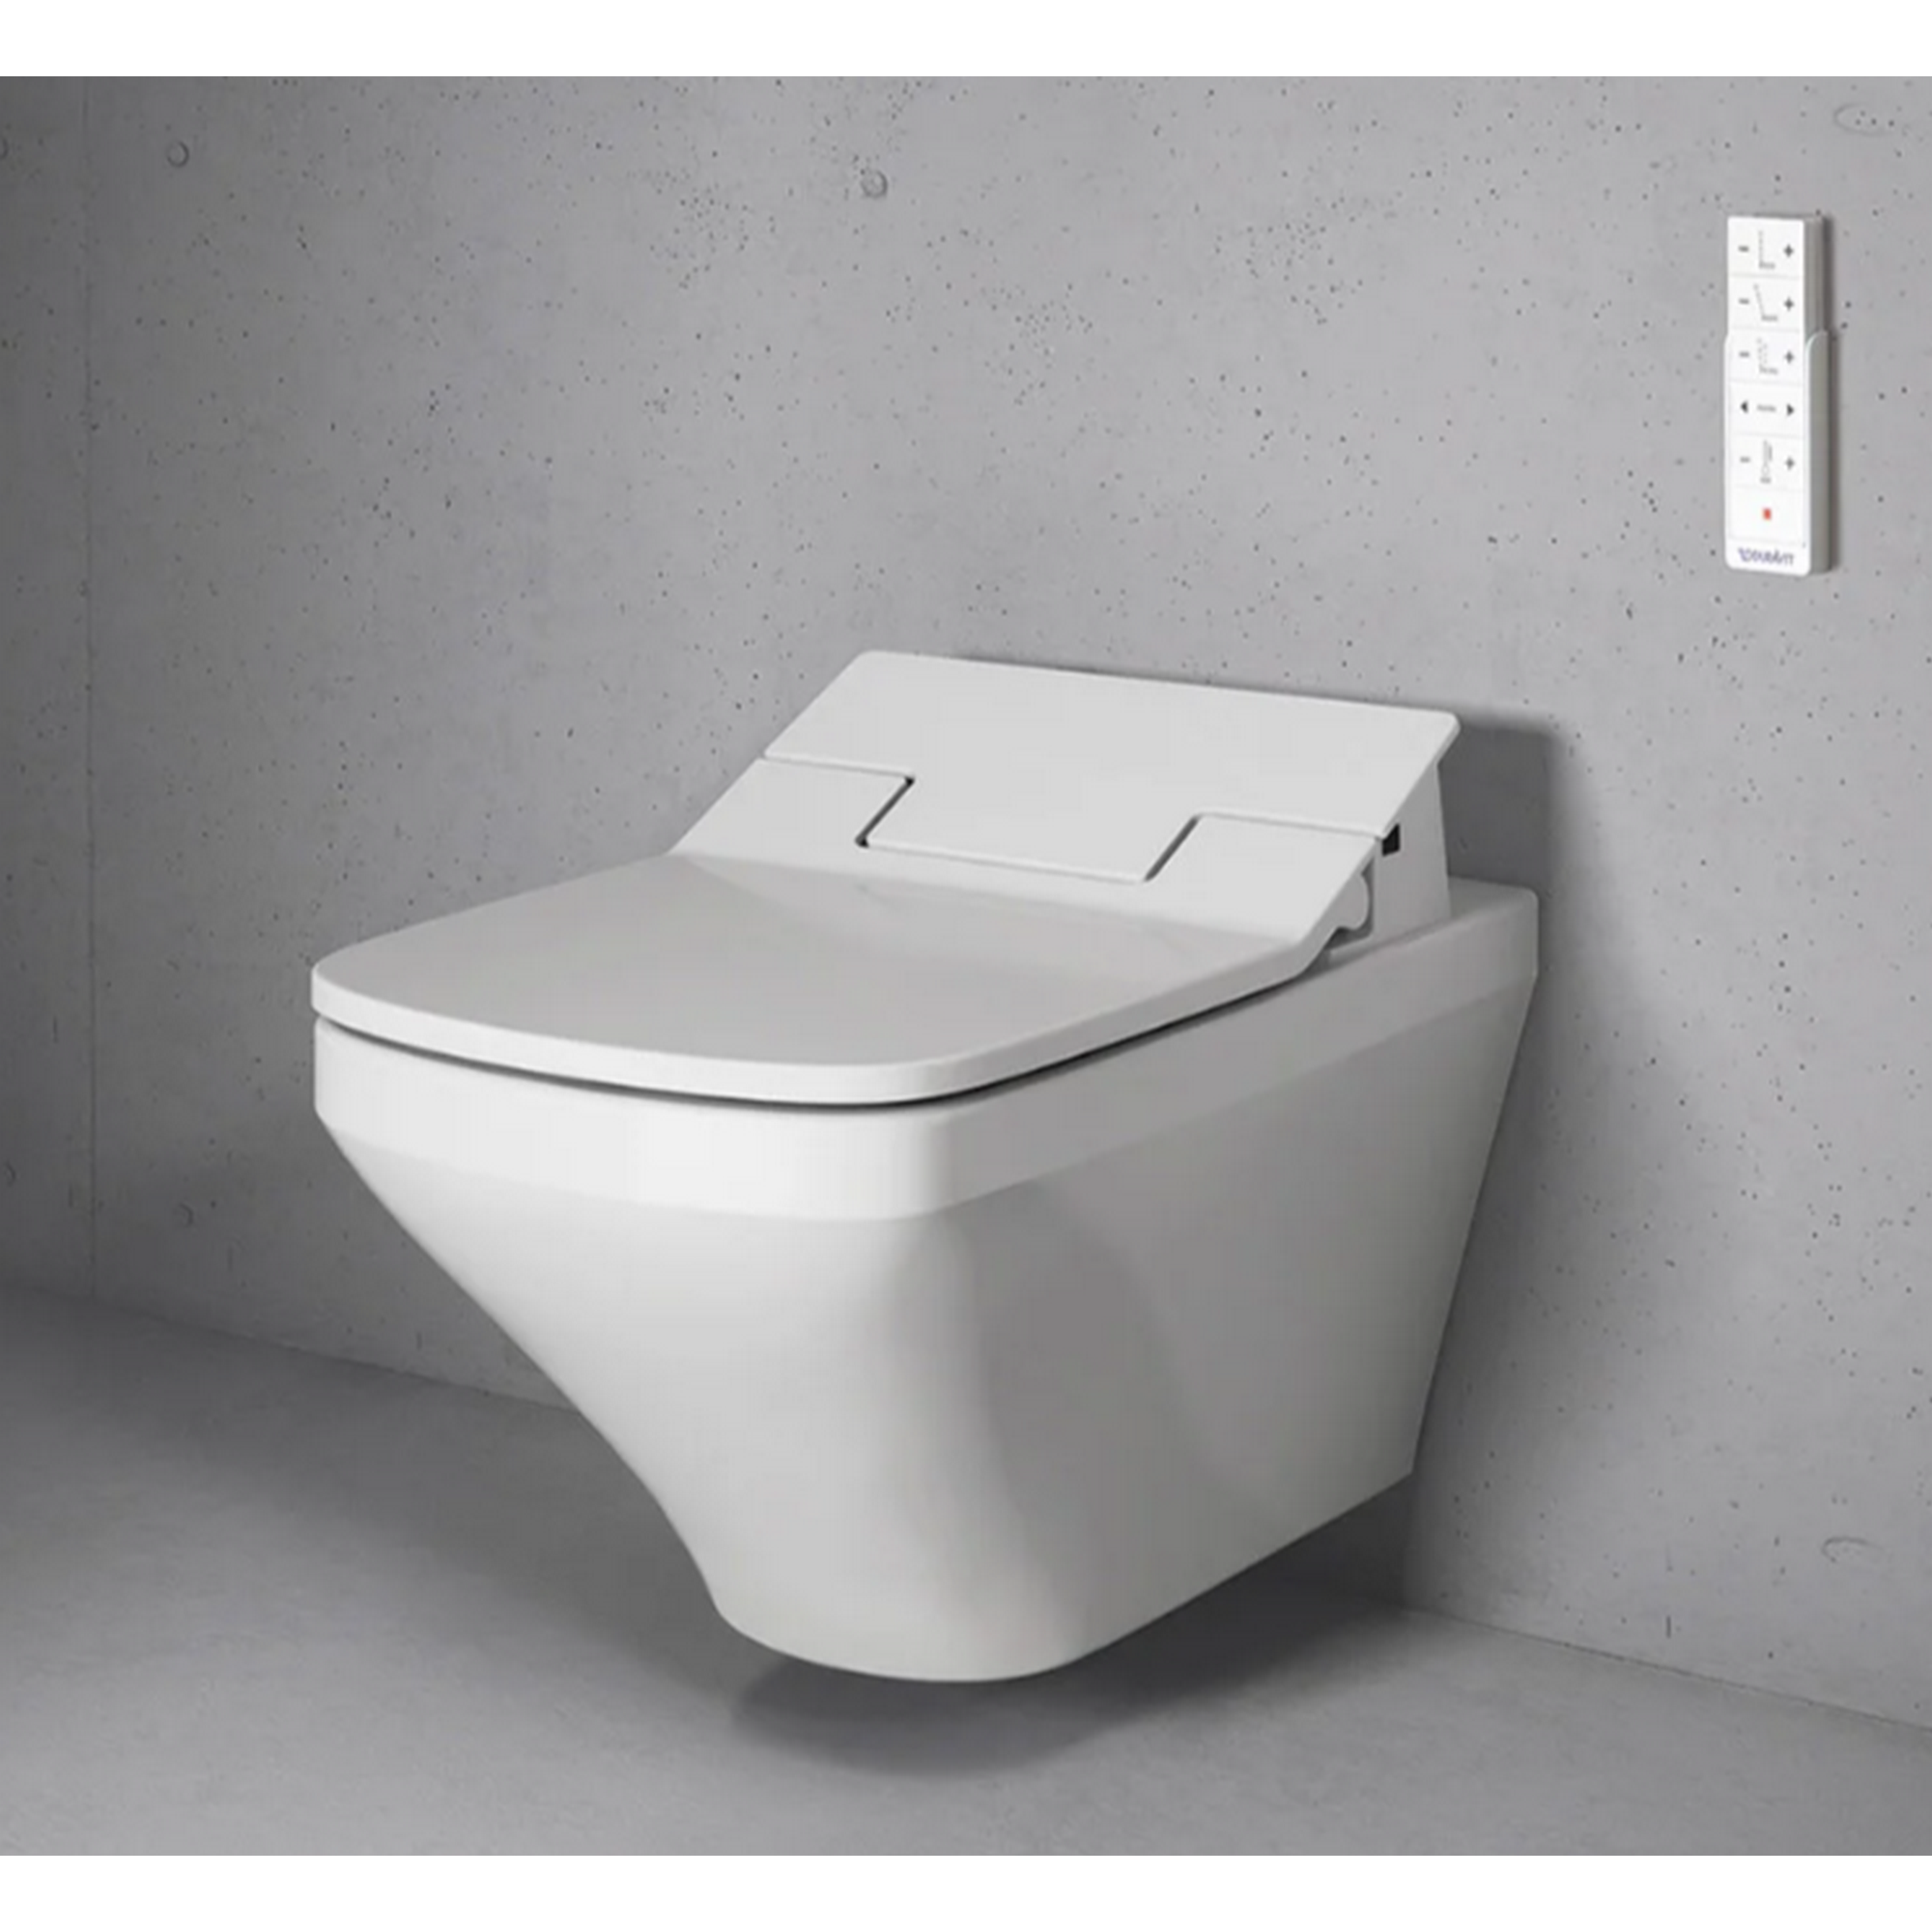 Wand-WC-Set 'DuraStyle Sensowash-Slim' mit Dusch-WC-Sitz + product picture